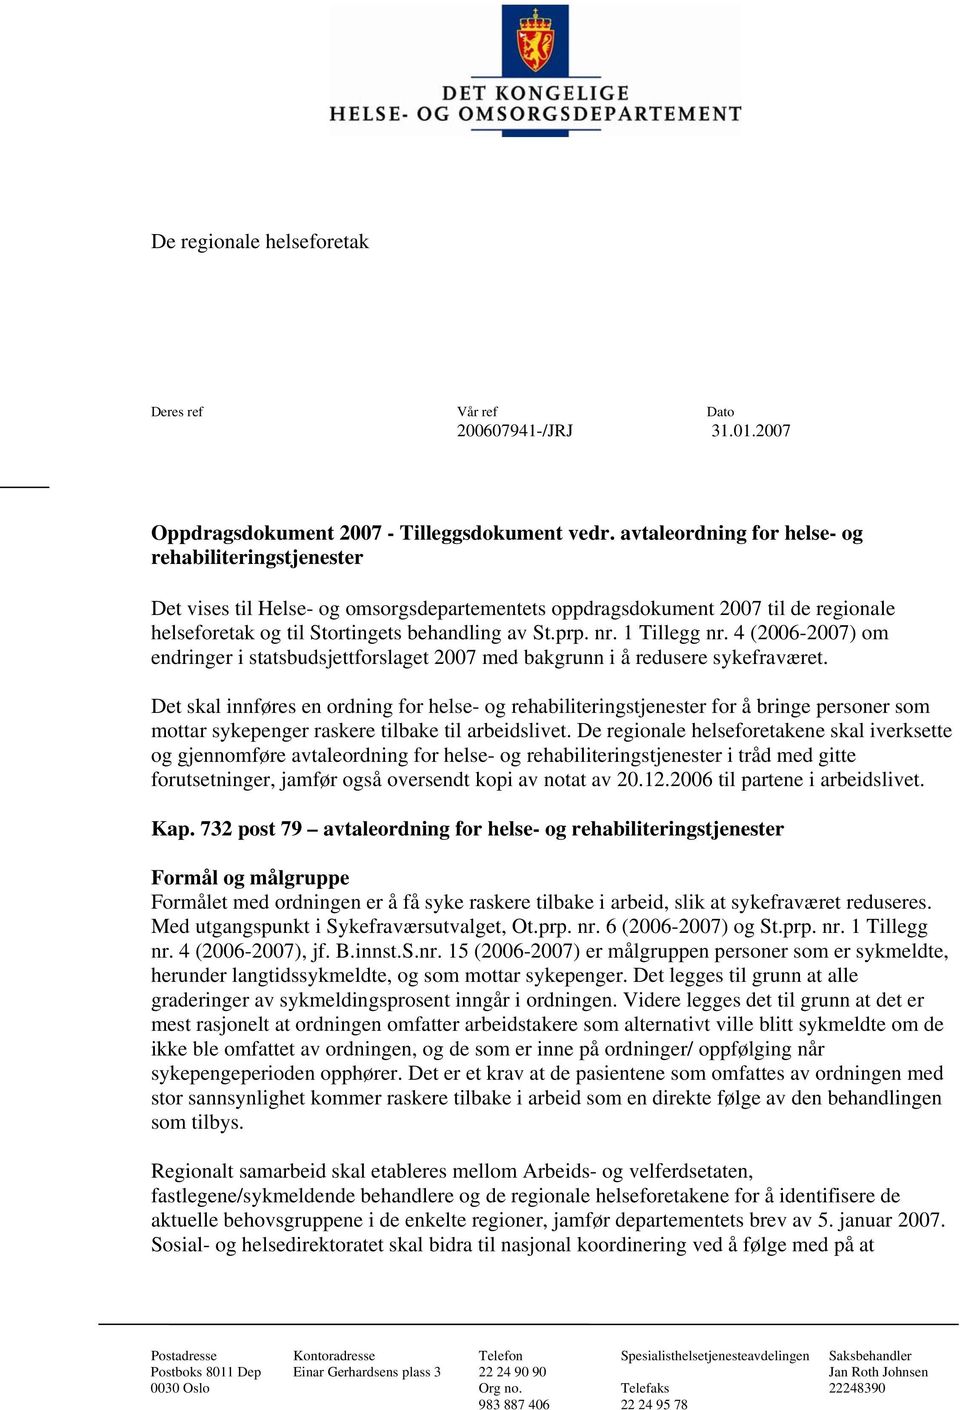 1 Tillegg nr. 4 (2006-2007) om endringer i statsbudsjettforslaget 2007 med bakgrunn i å redusere sykefraværet.